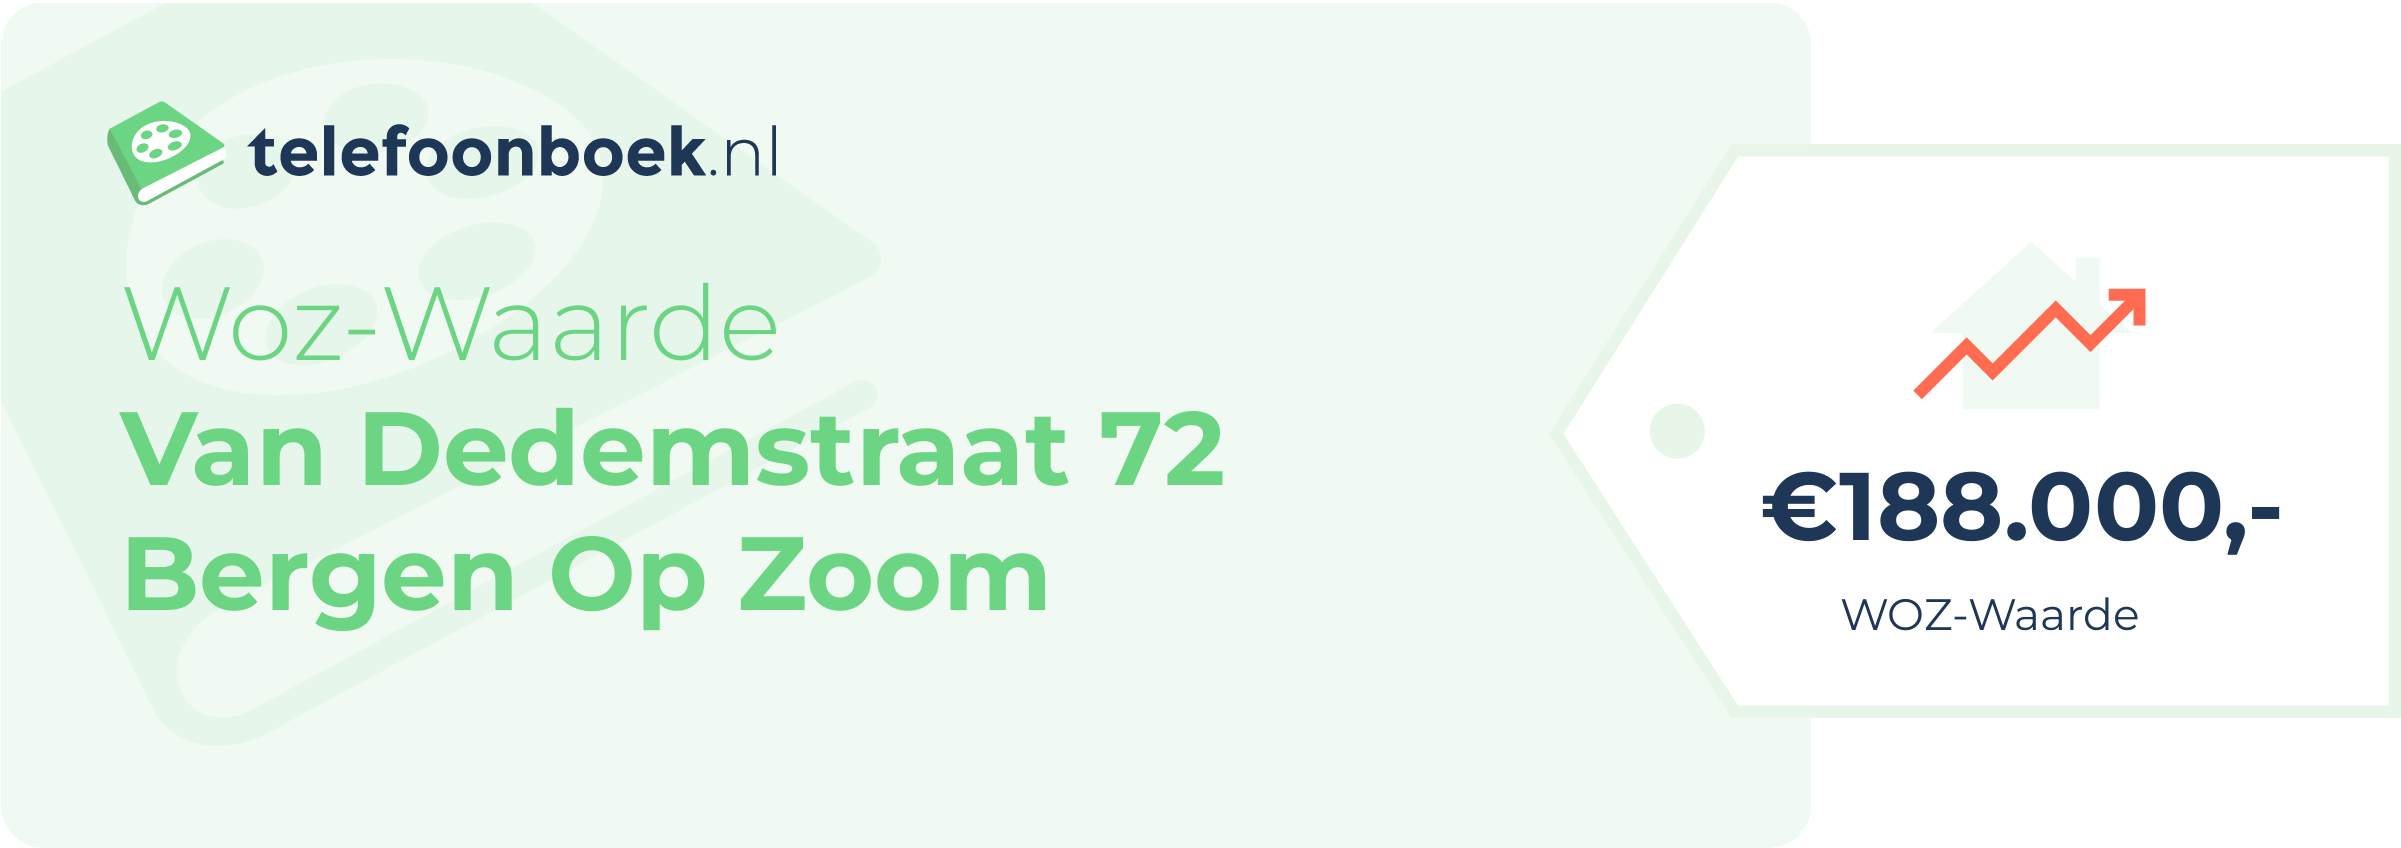 WOZ-waarde Van Dedemstraat 72 Bergen Op Zoom